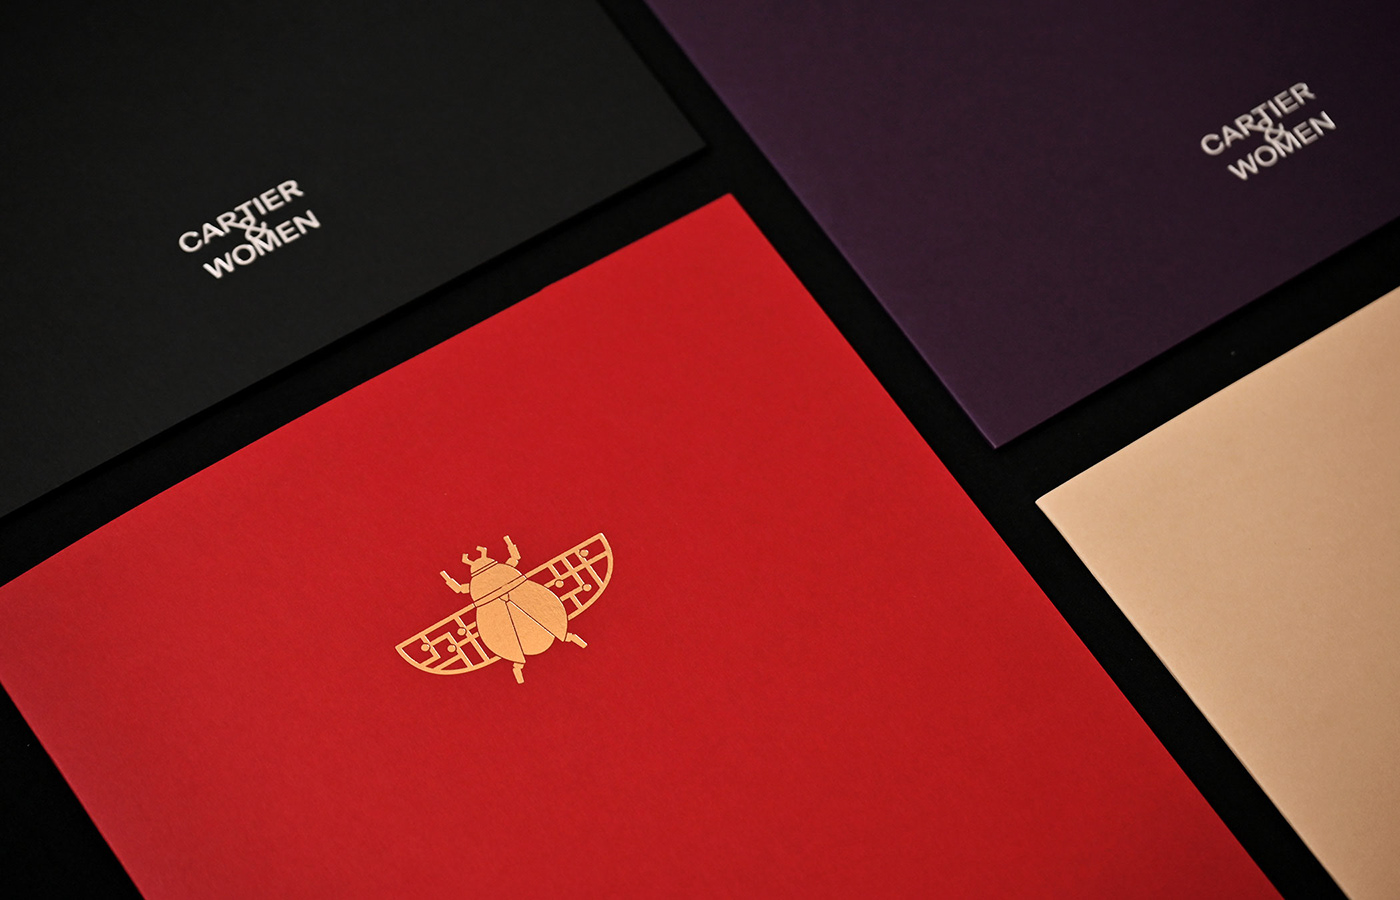 Cartier merchandise Exhibition  graphic design  luxury premium packagining